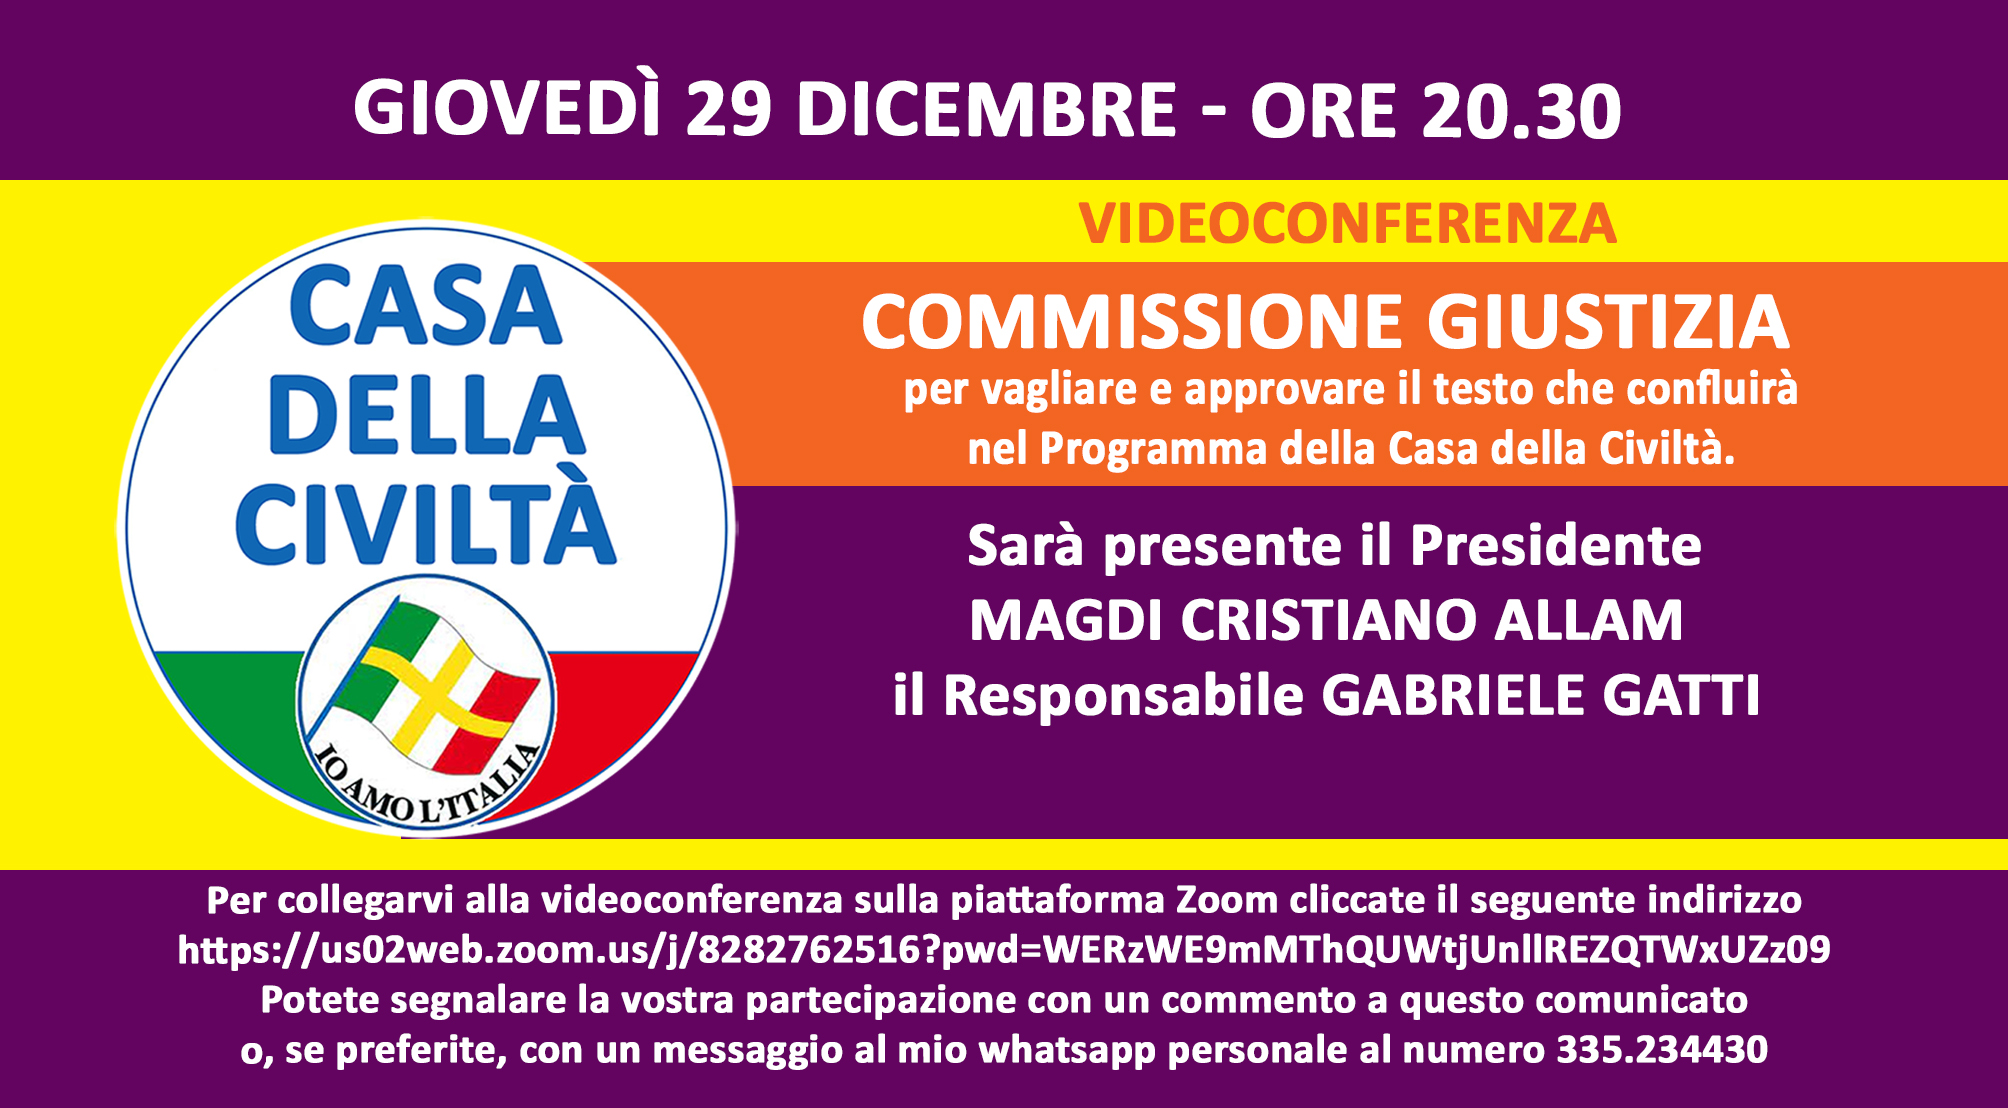 Giovedì 29 dicembre, alle ore 20.30, videoconferenza della Commissione Giustizia. Gli iscritti alla Casa della Civiltà possono partecipare